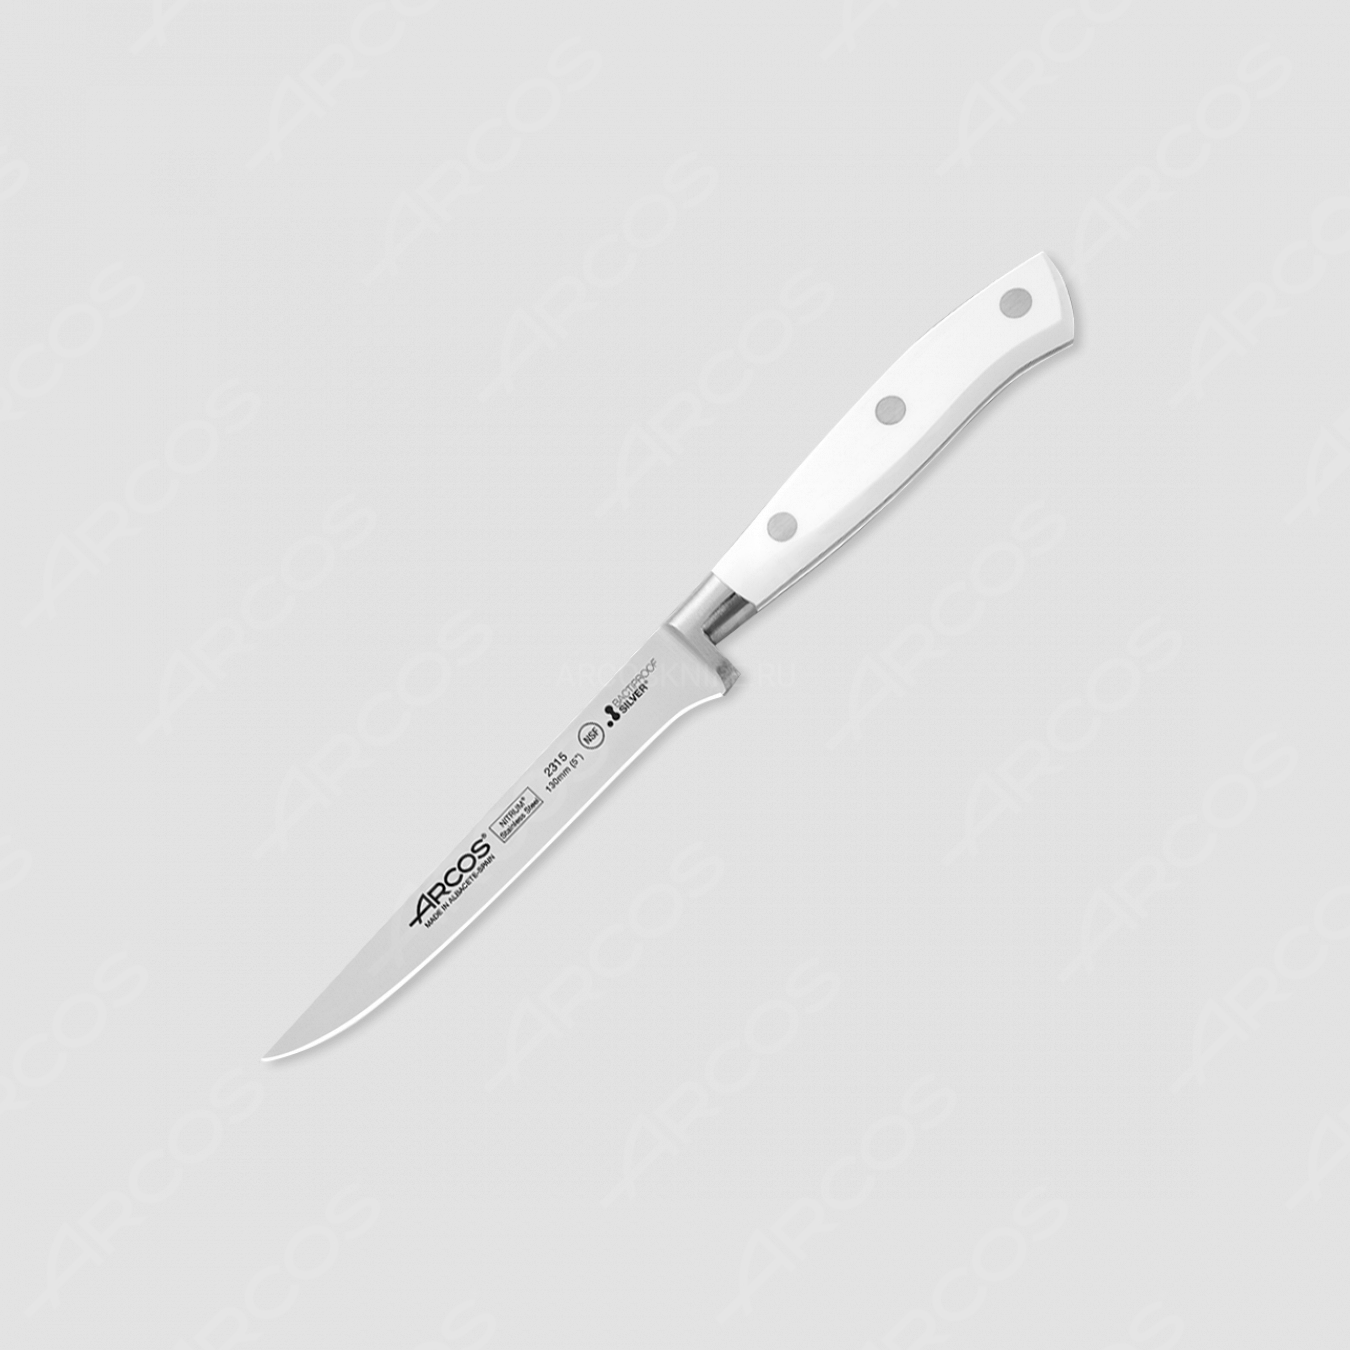 Нож кухонный обвалочный 13 см, серия Riviera Blanca, ARCOS, Испания